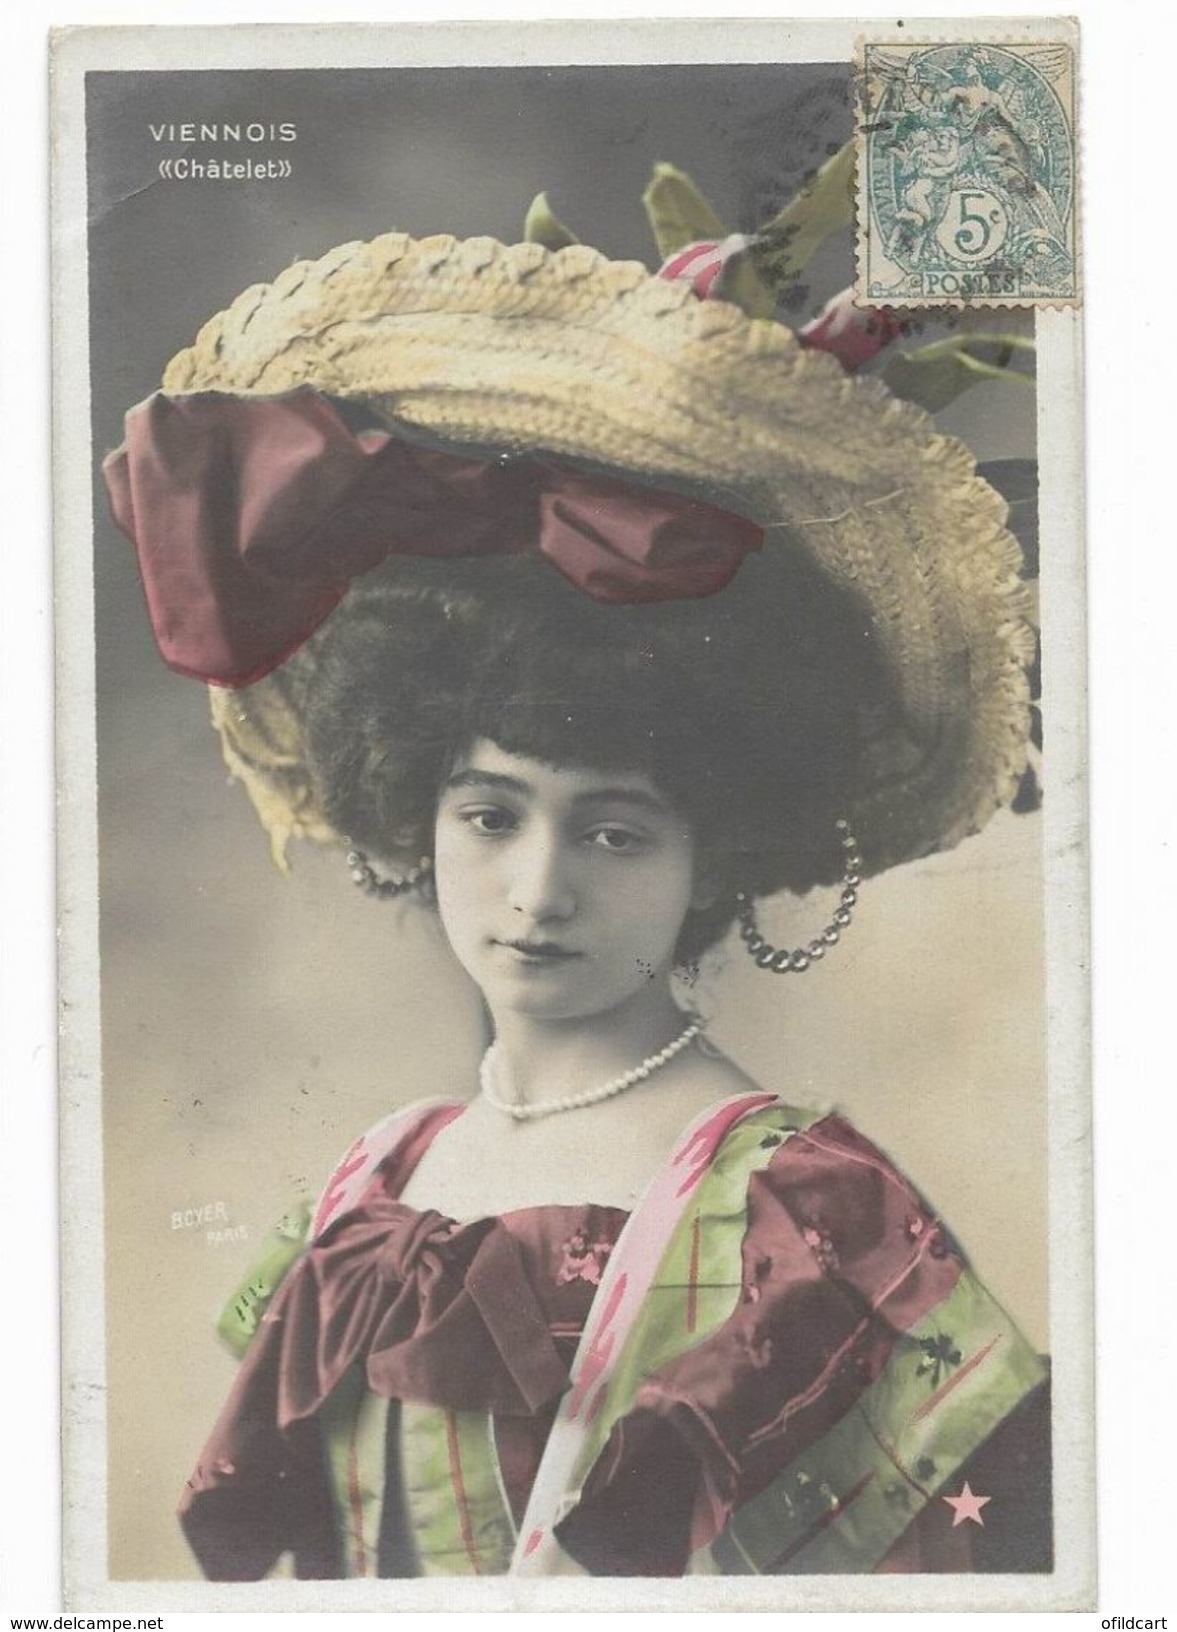 Viennois - Danseuse Artiste De La Belle époque - Carte Postale Ancienne -  Femme Lady Frau - Espagne Spain - Artisti